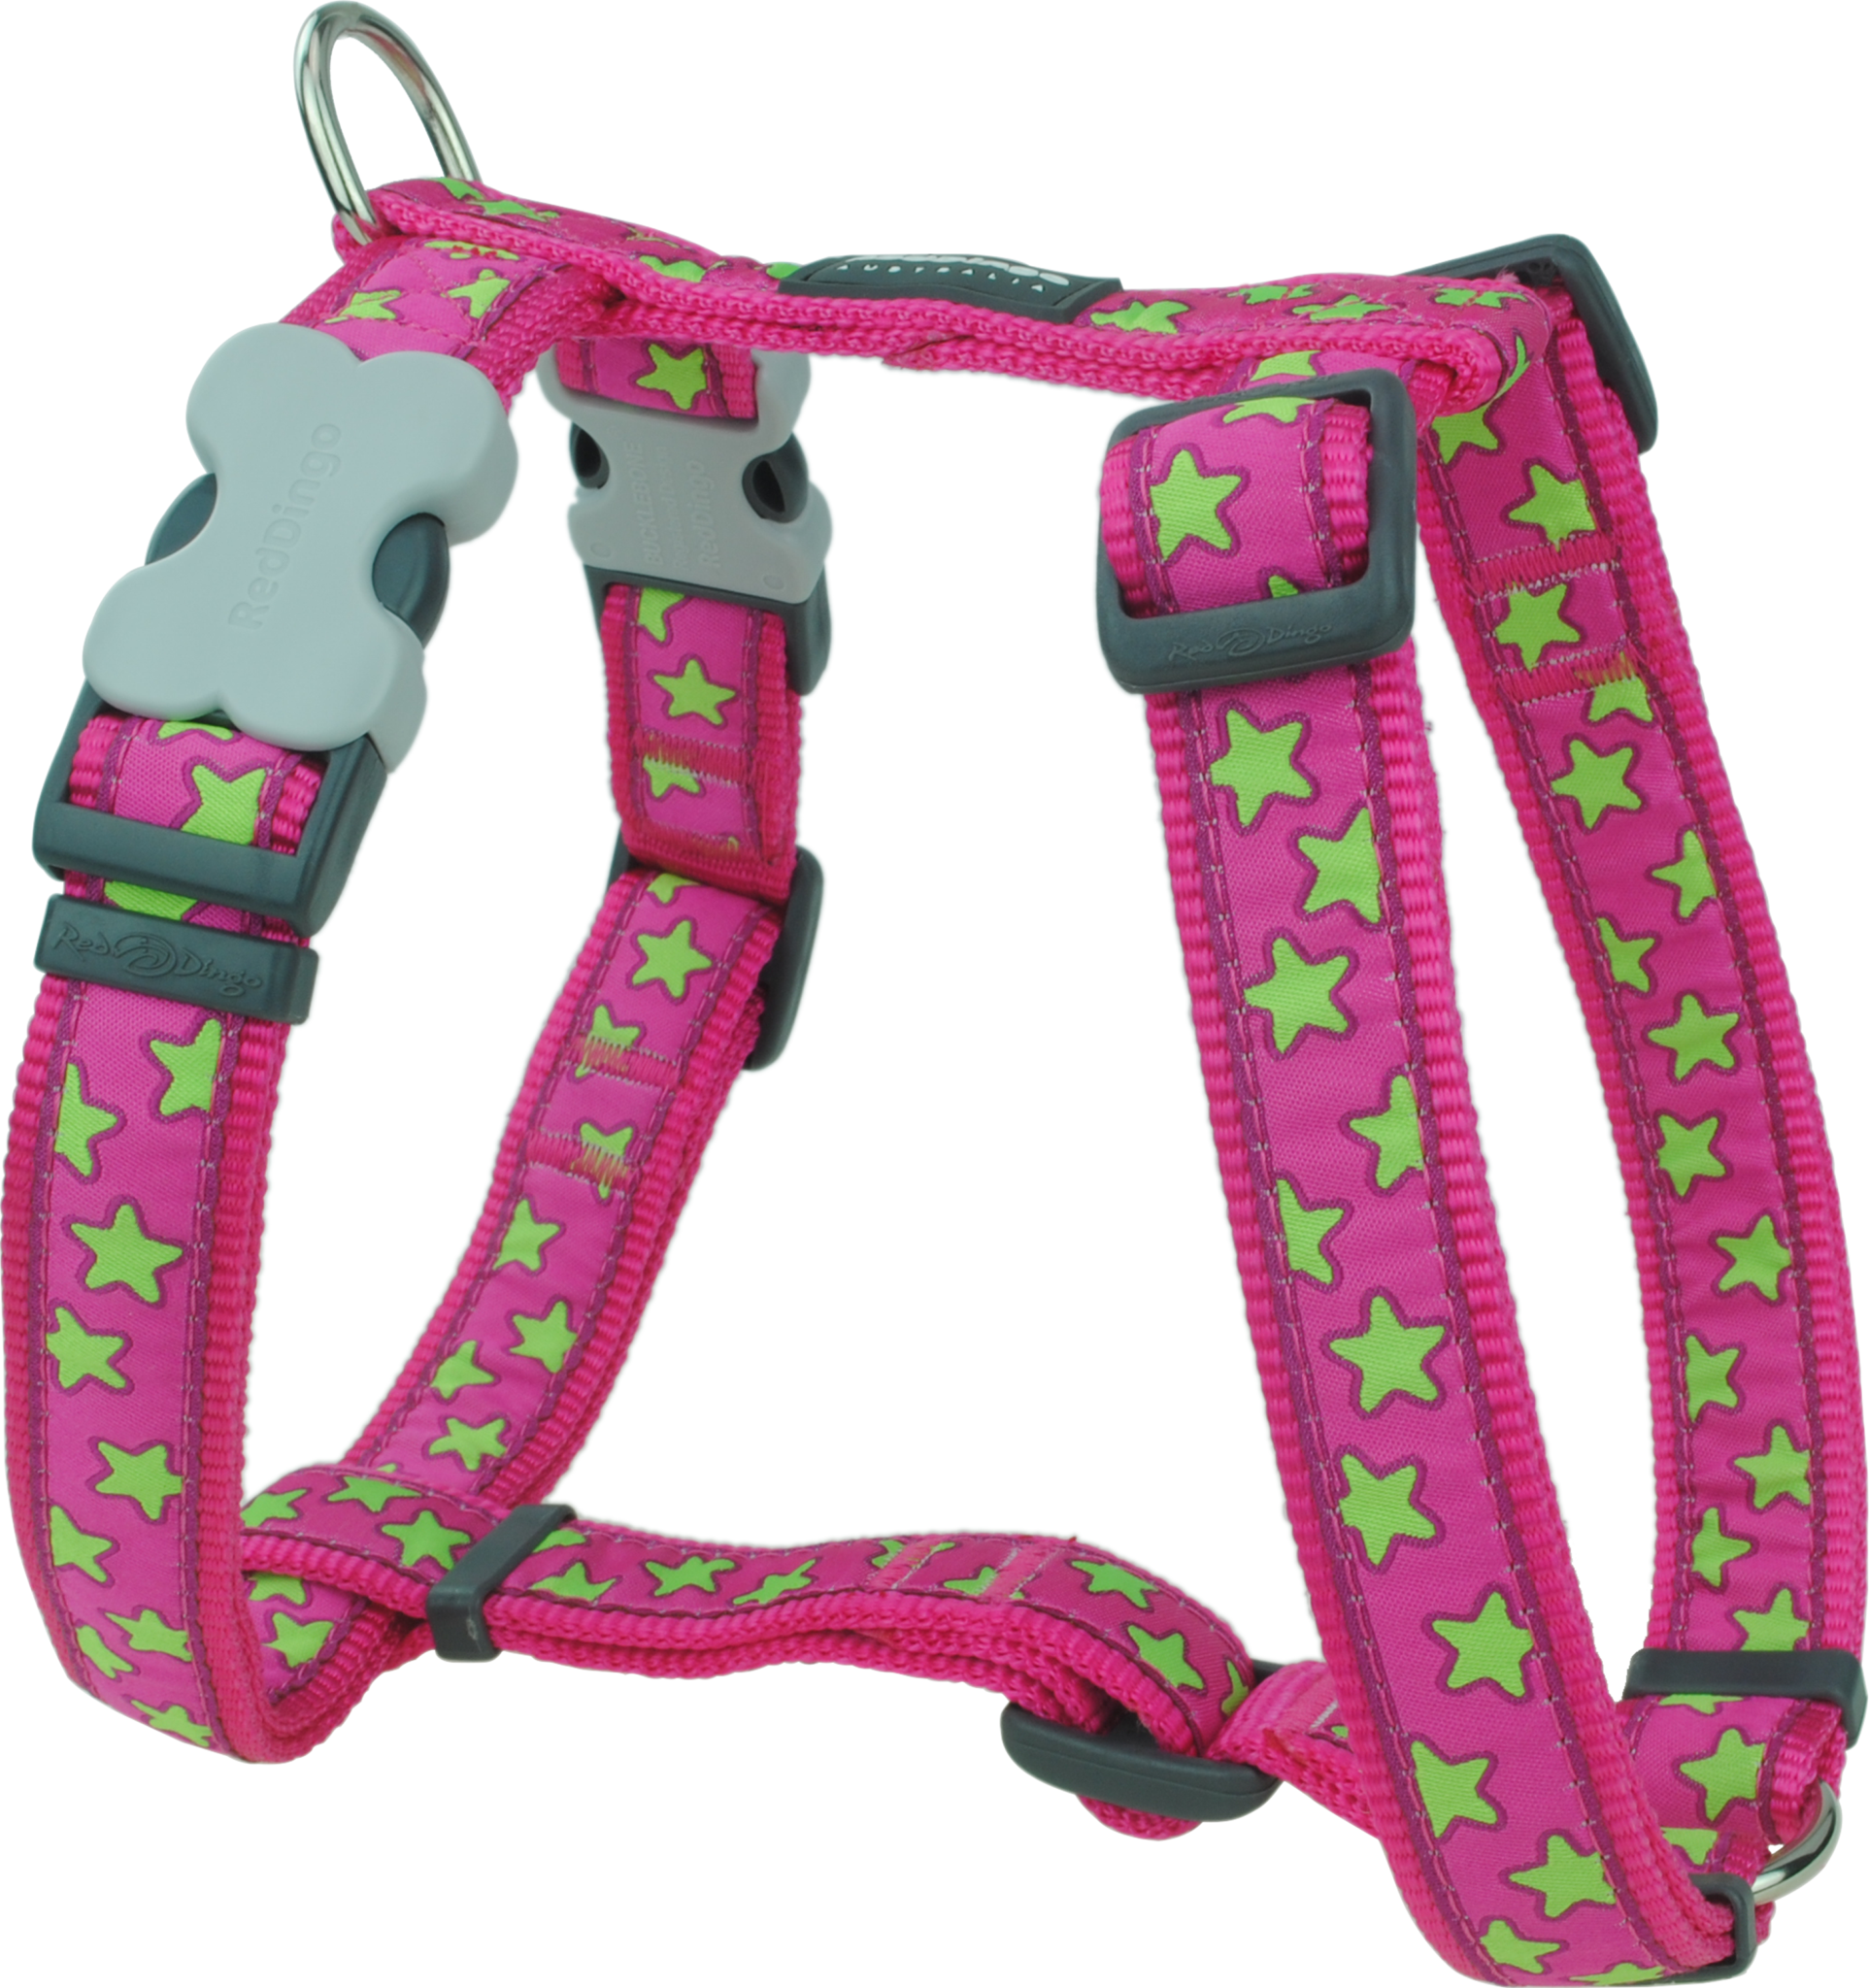 Red Dingo Designer Dog Harness - Stars (Lime Green on Hot Pink)